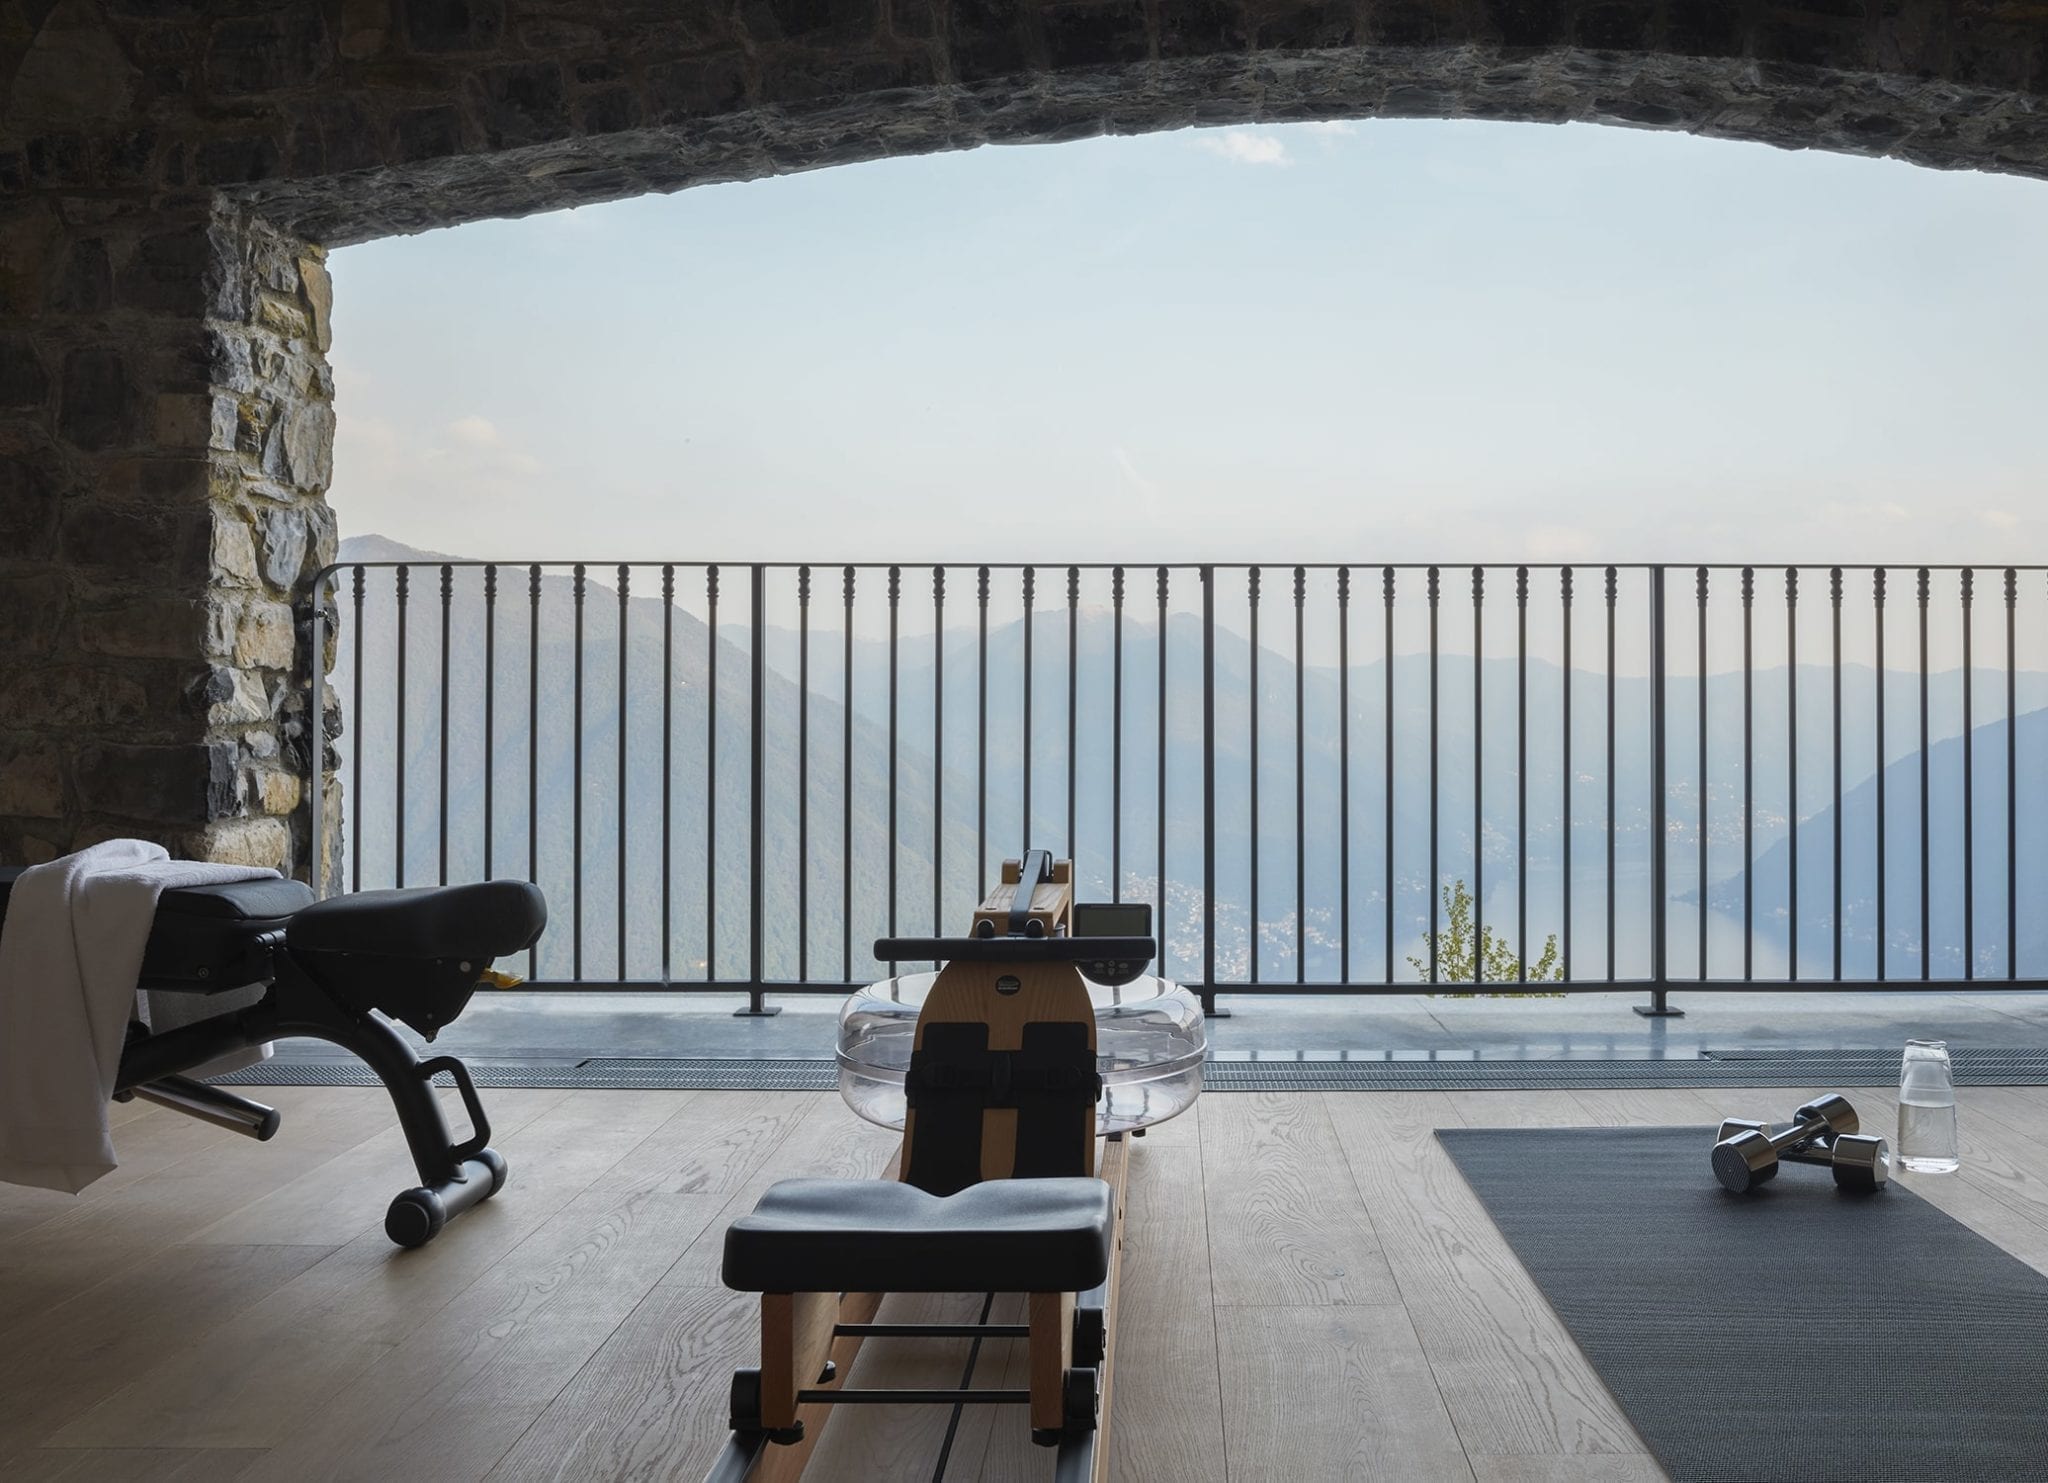 Nest Italy - Villa overlooking Lake Como